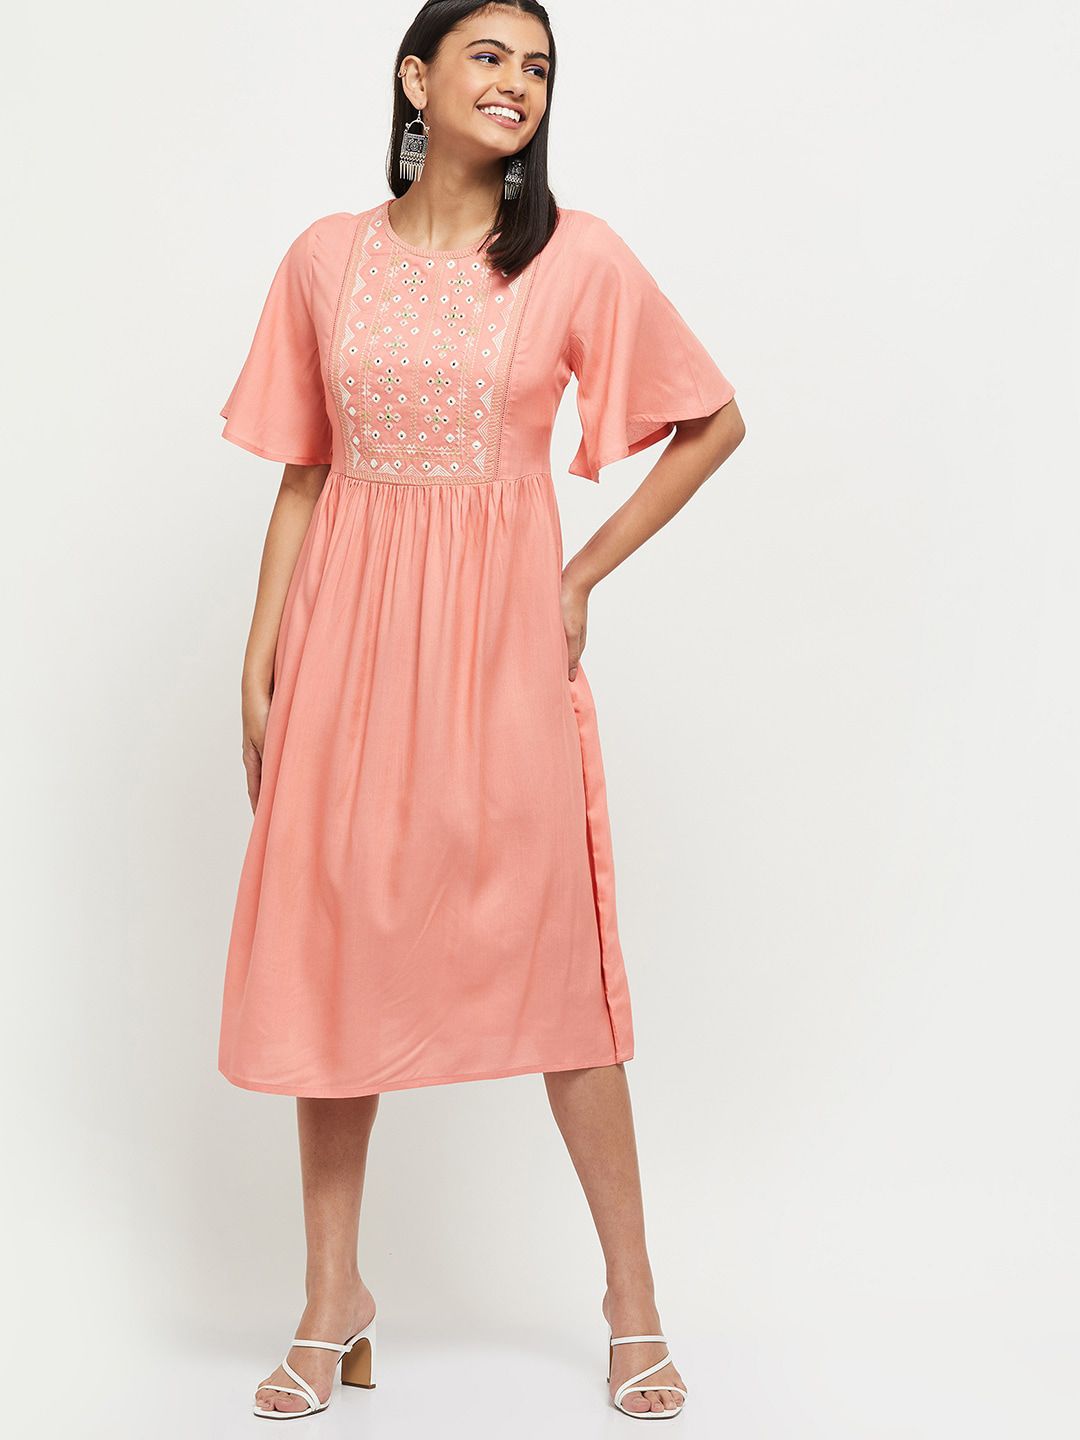 max Women Peach-Coloured A-Line Midi Dress Price in India